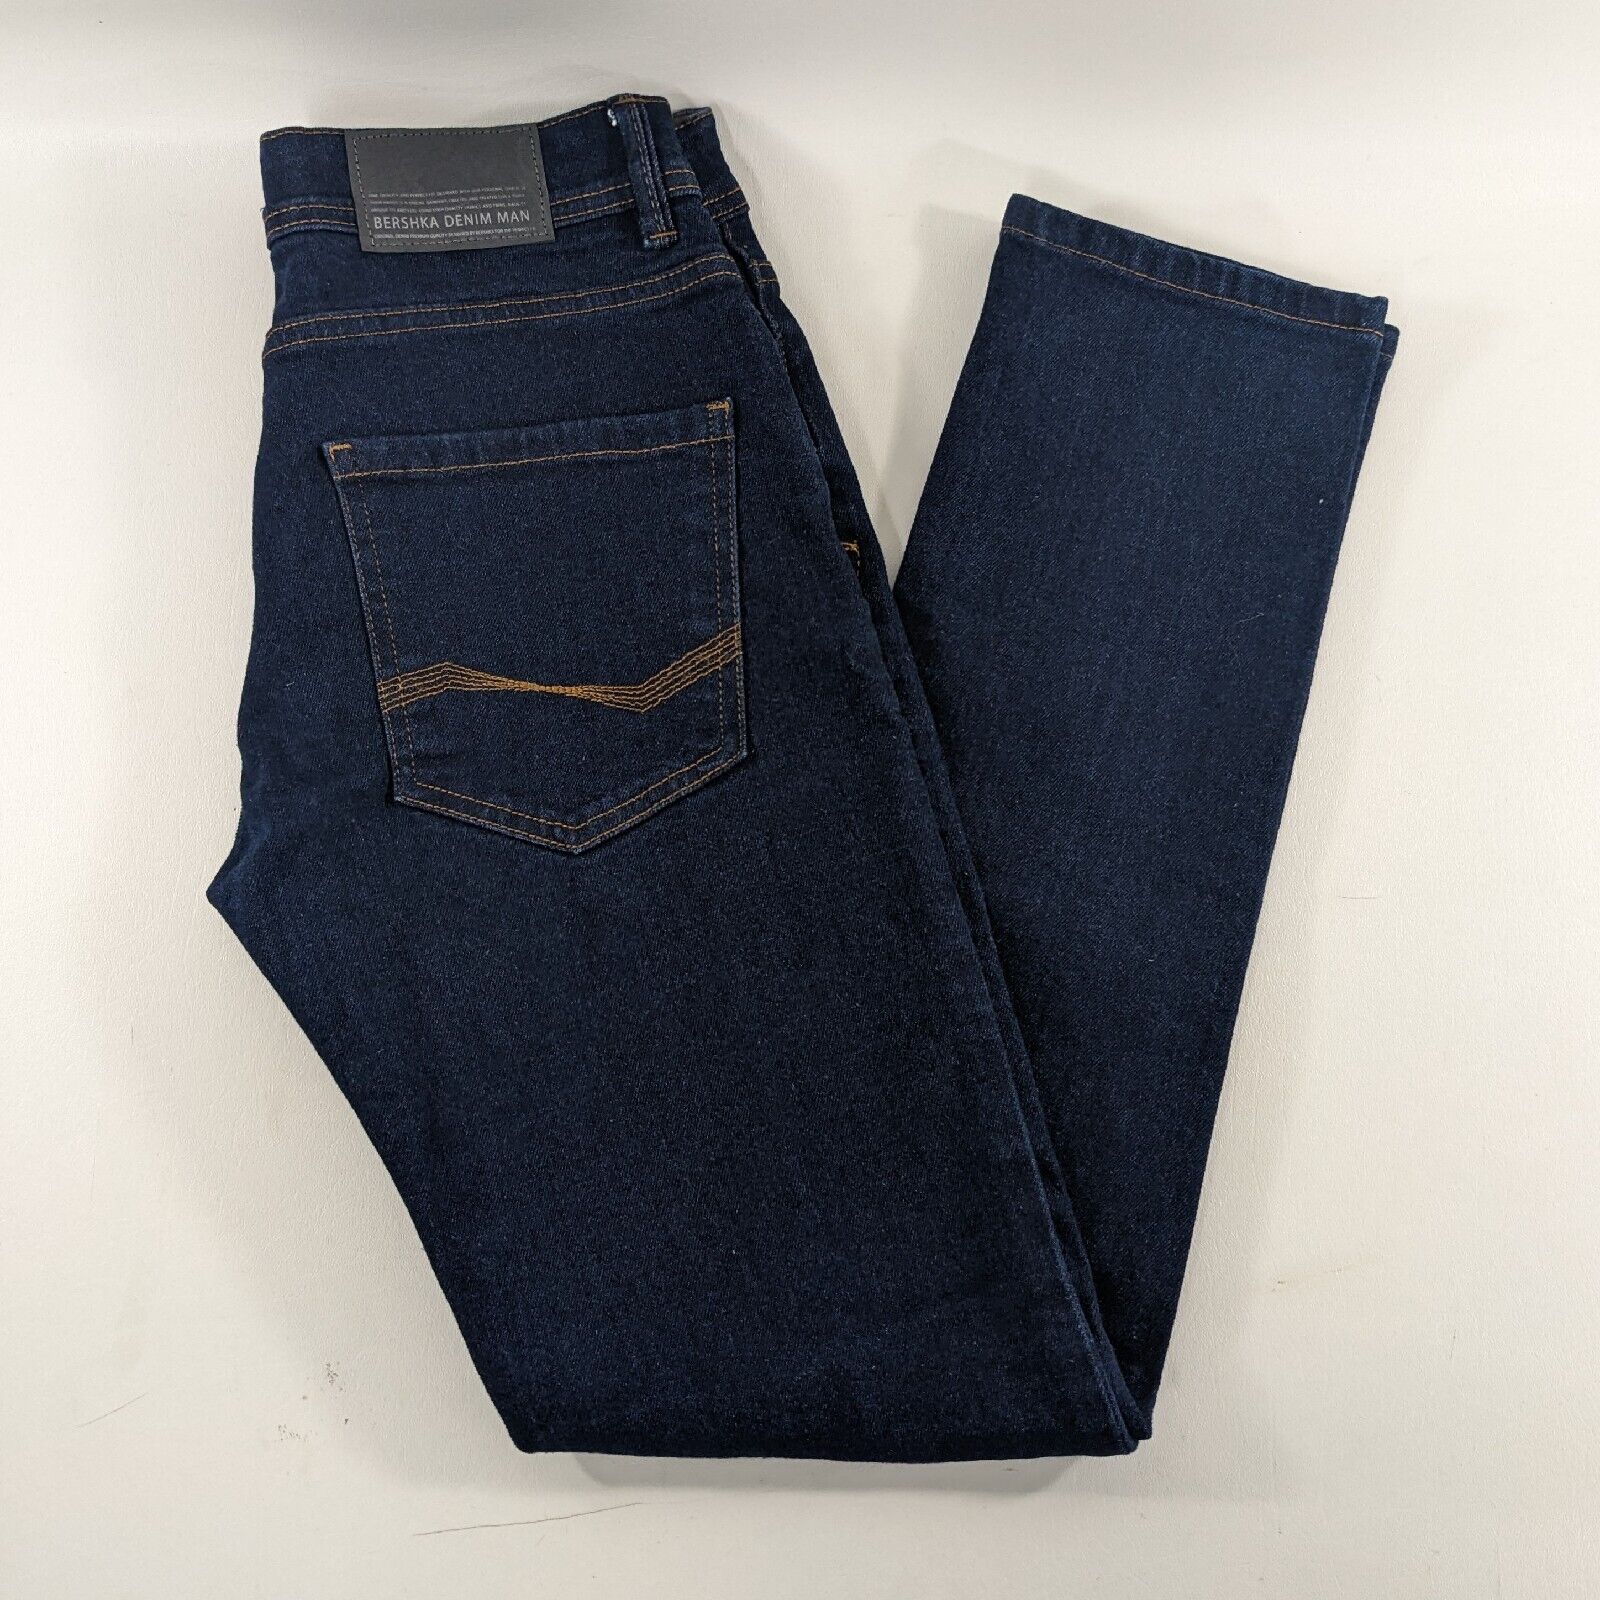 Bershka Slim Fit Blue Denim Jeans Mens Size 28x30 - image 1